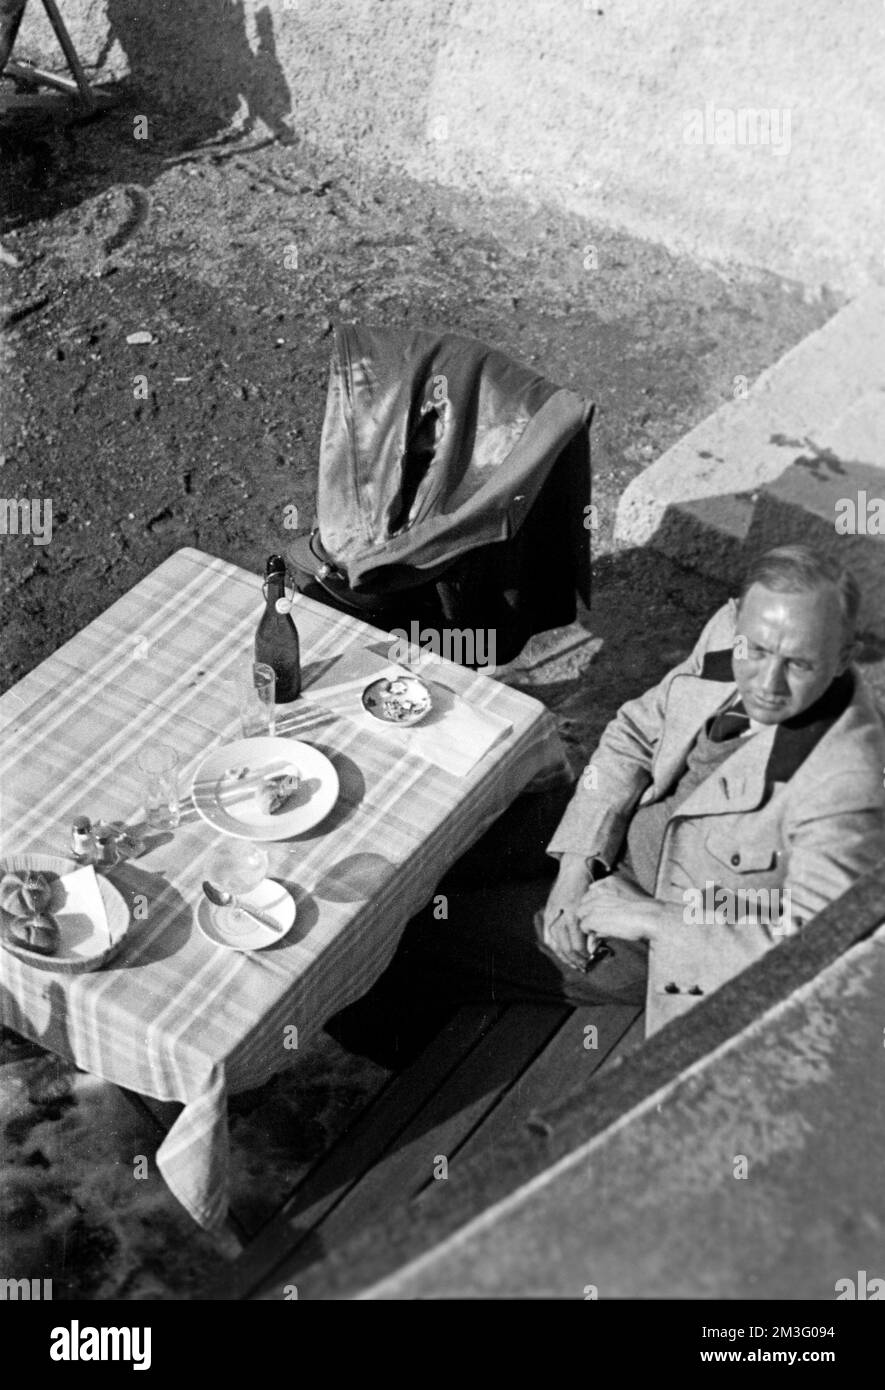 Frühstück in Garmisch-Partenkirchen, 1936. Breakfast in Garmich-Partenkirchen, 1936. Stock Photo